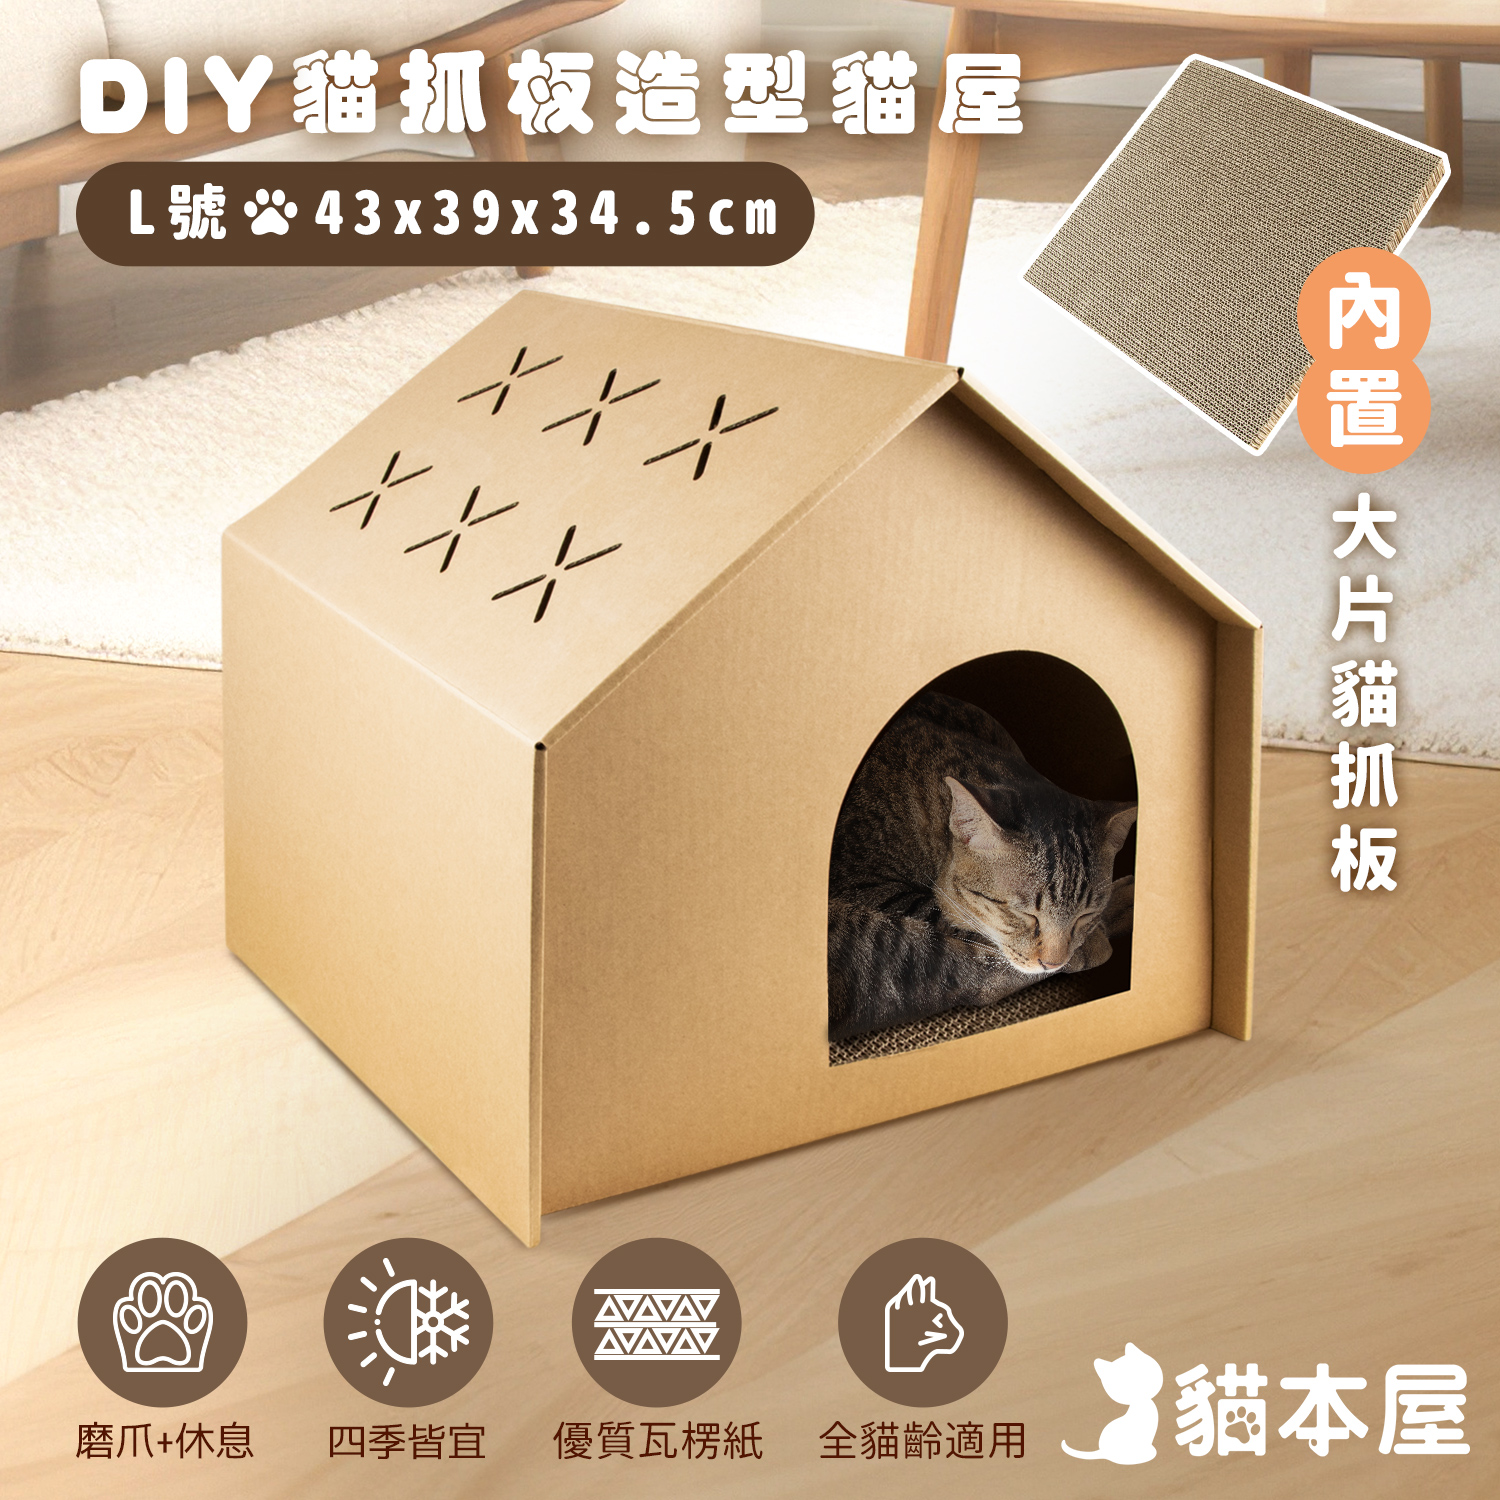 DIY貓抓板造型貓屋(L號)